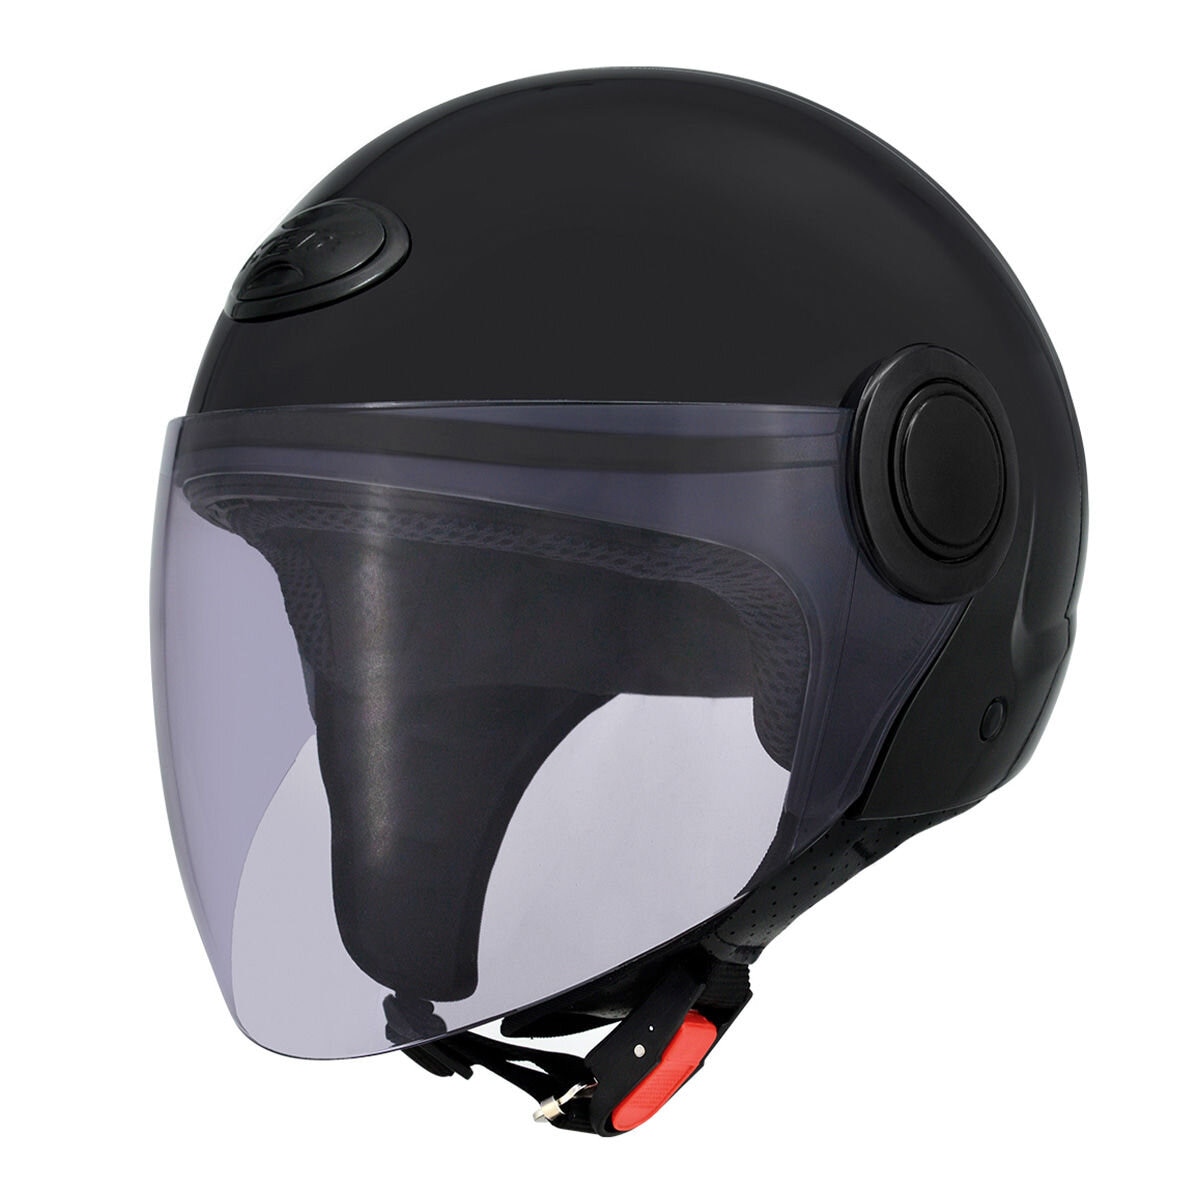 M2R 1/2罩安全帽 騎乘機車用防護頭盔 M-506 L